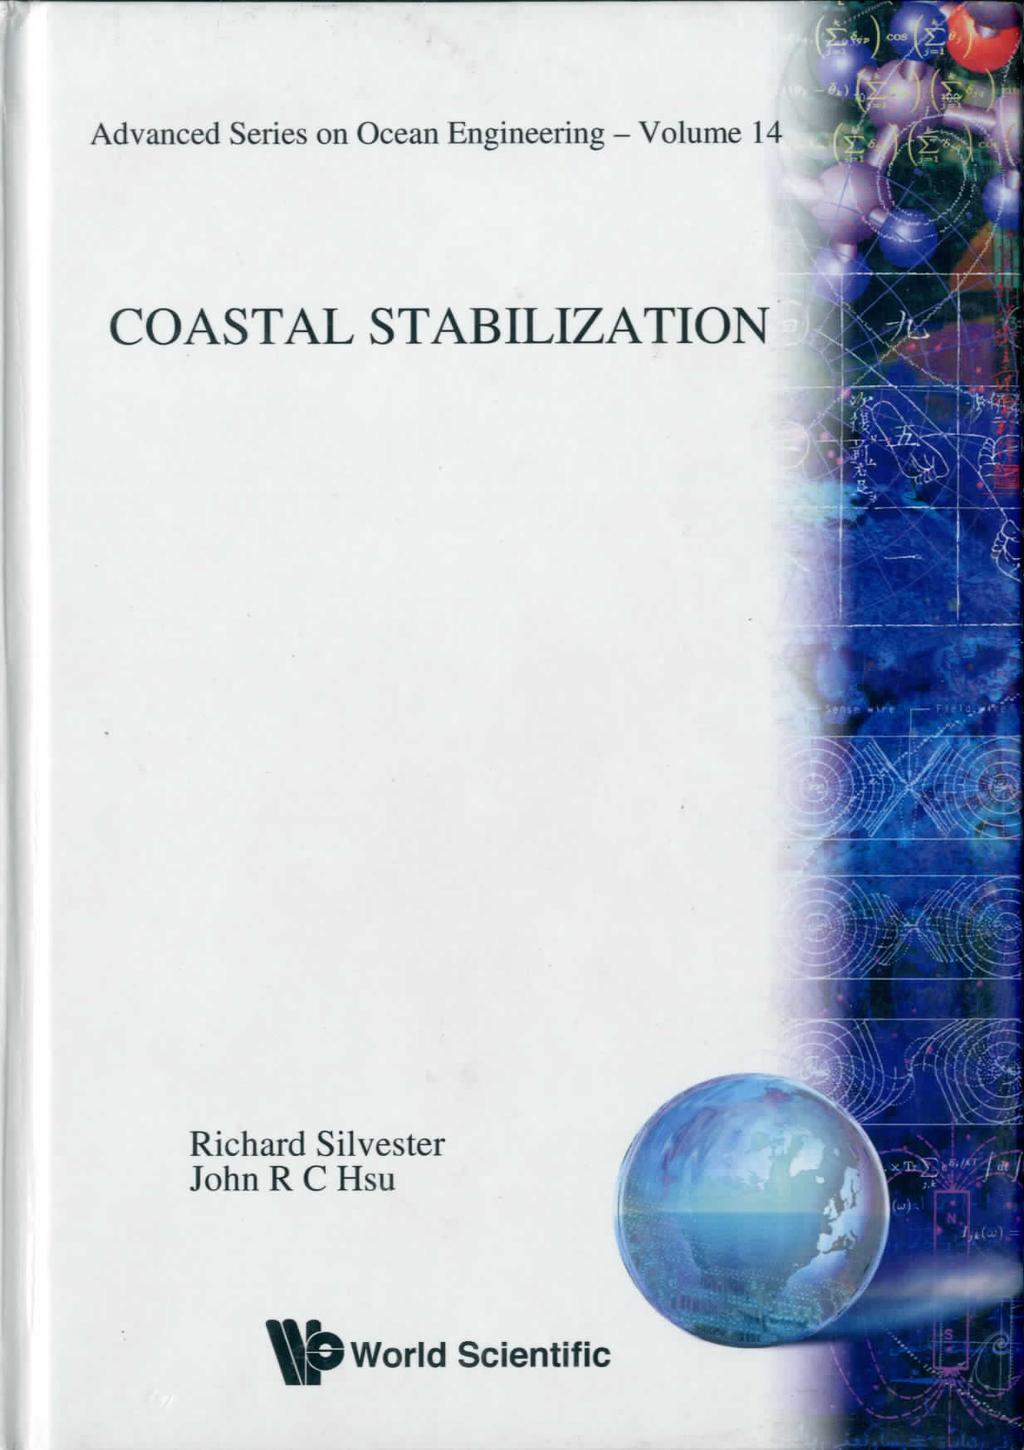 Advanced Series on Ocean Engineering - Volume 14 COASTAL